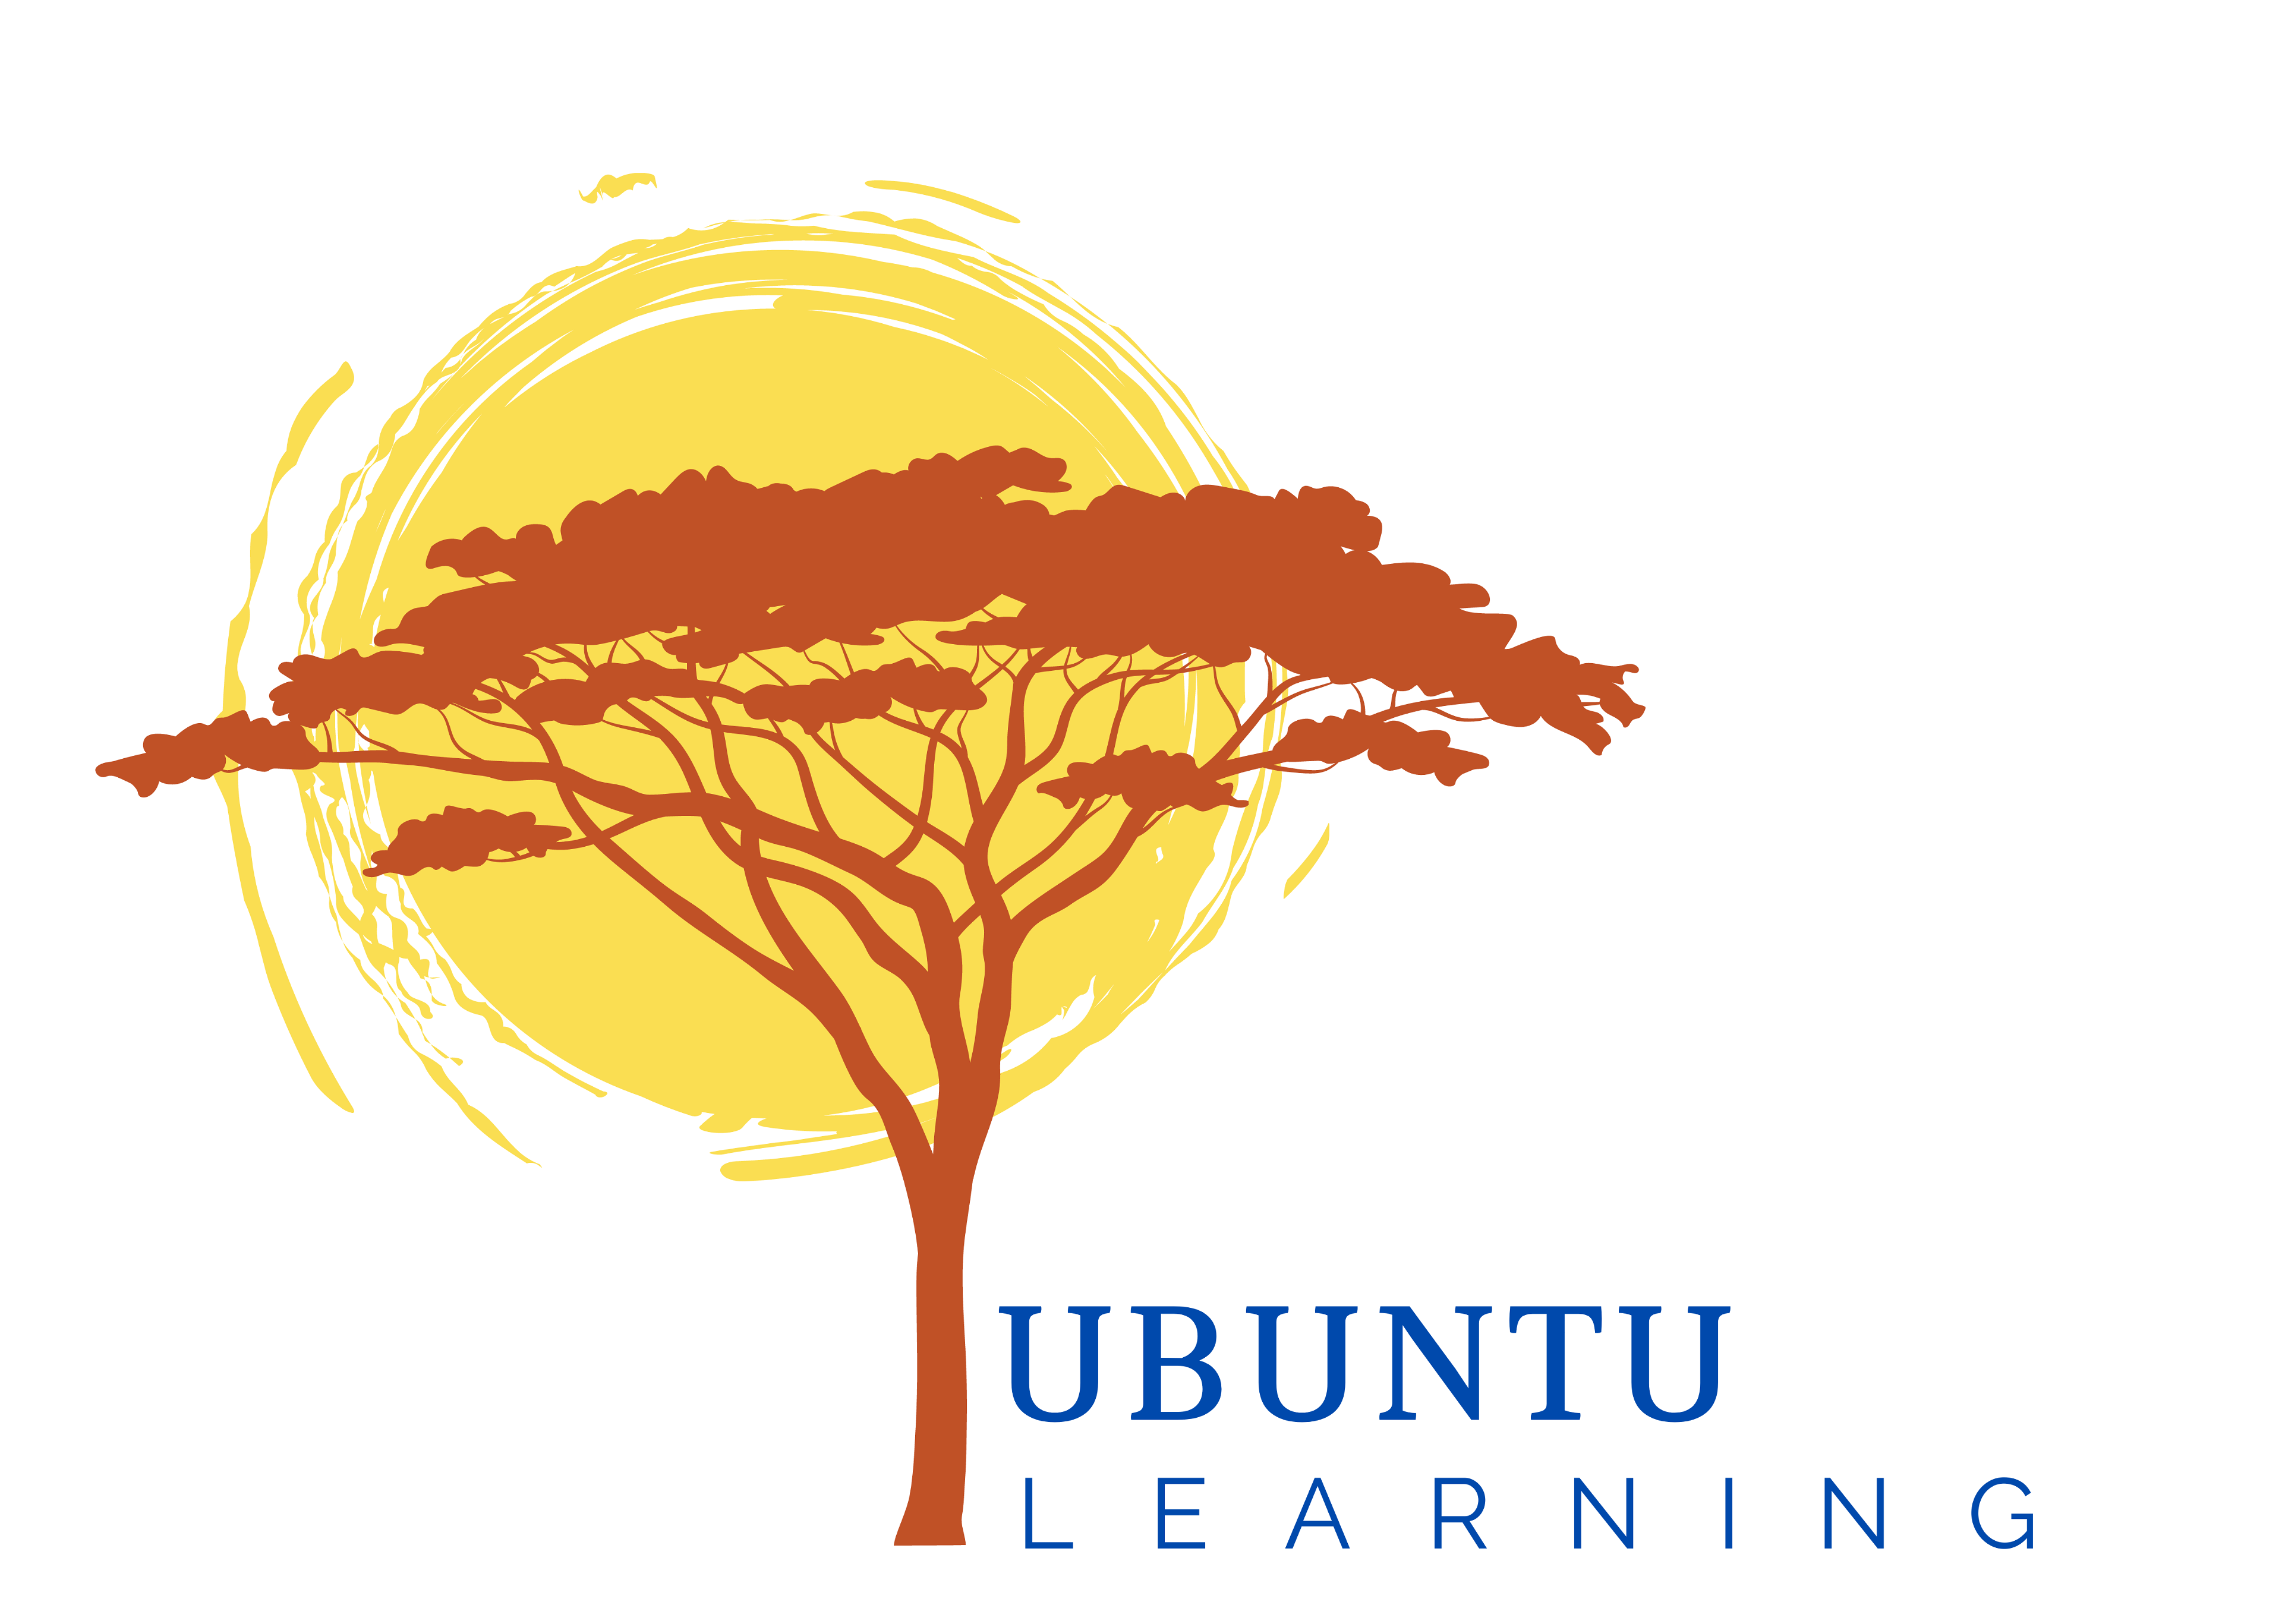 Ubuntu Learning logo